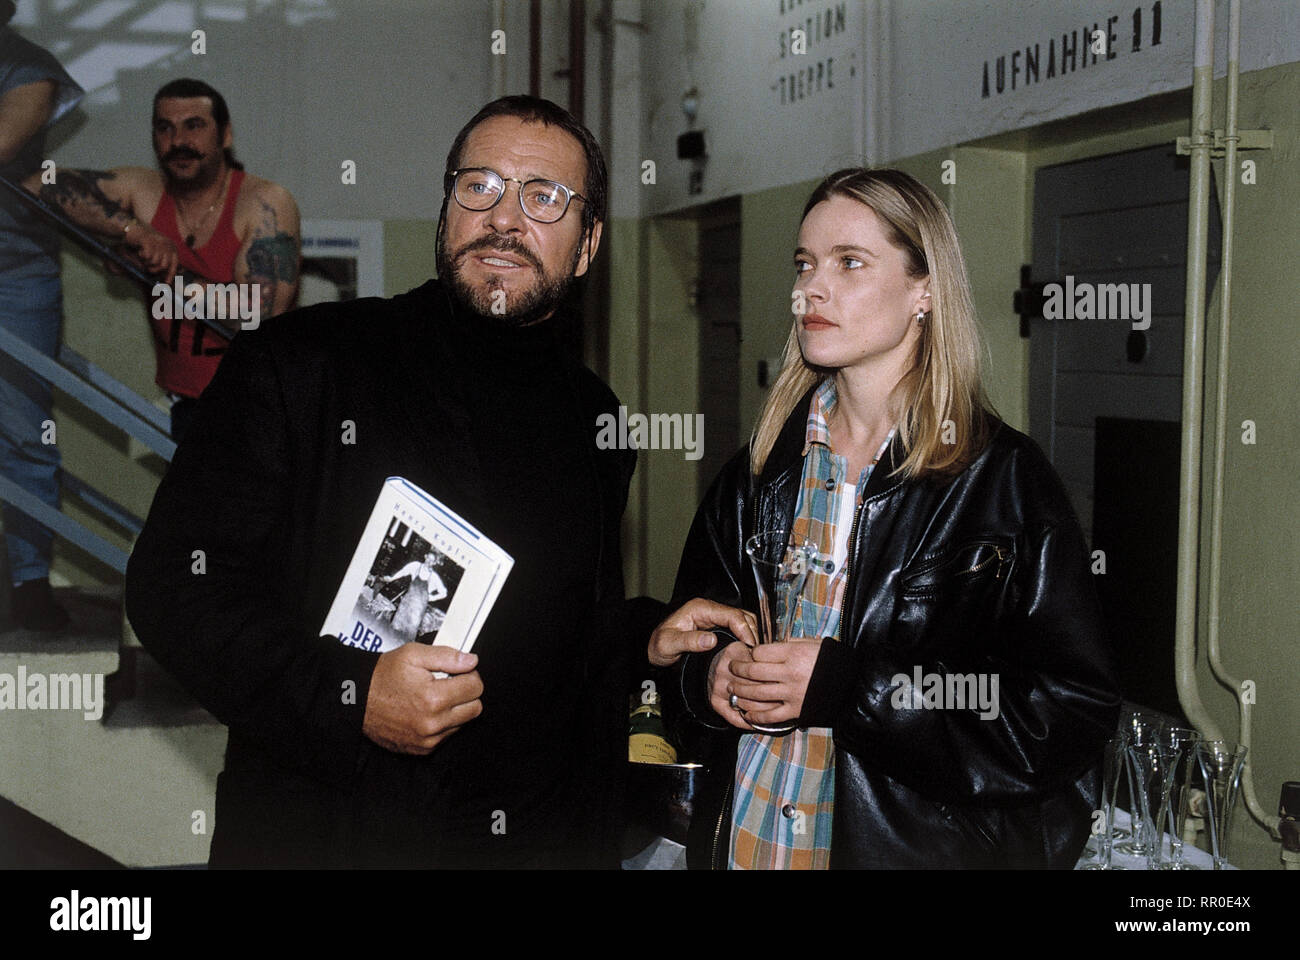 DER SANDMANN / D 1995 / Nico Hofmann / Henry Kupfer (GÖTZ GEORGE), Ina  Littmann (KAROLINE EICHHORN) C39011 # / Überschrift: DER SANDMANN / D 1995  Stock Photo - Alamy